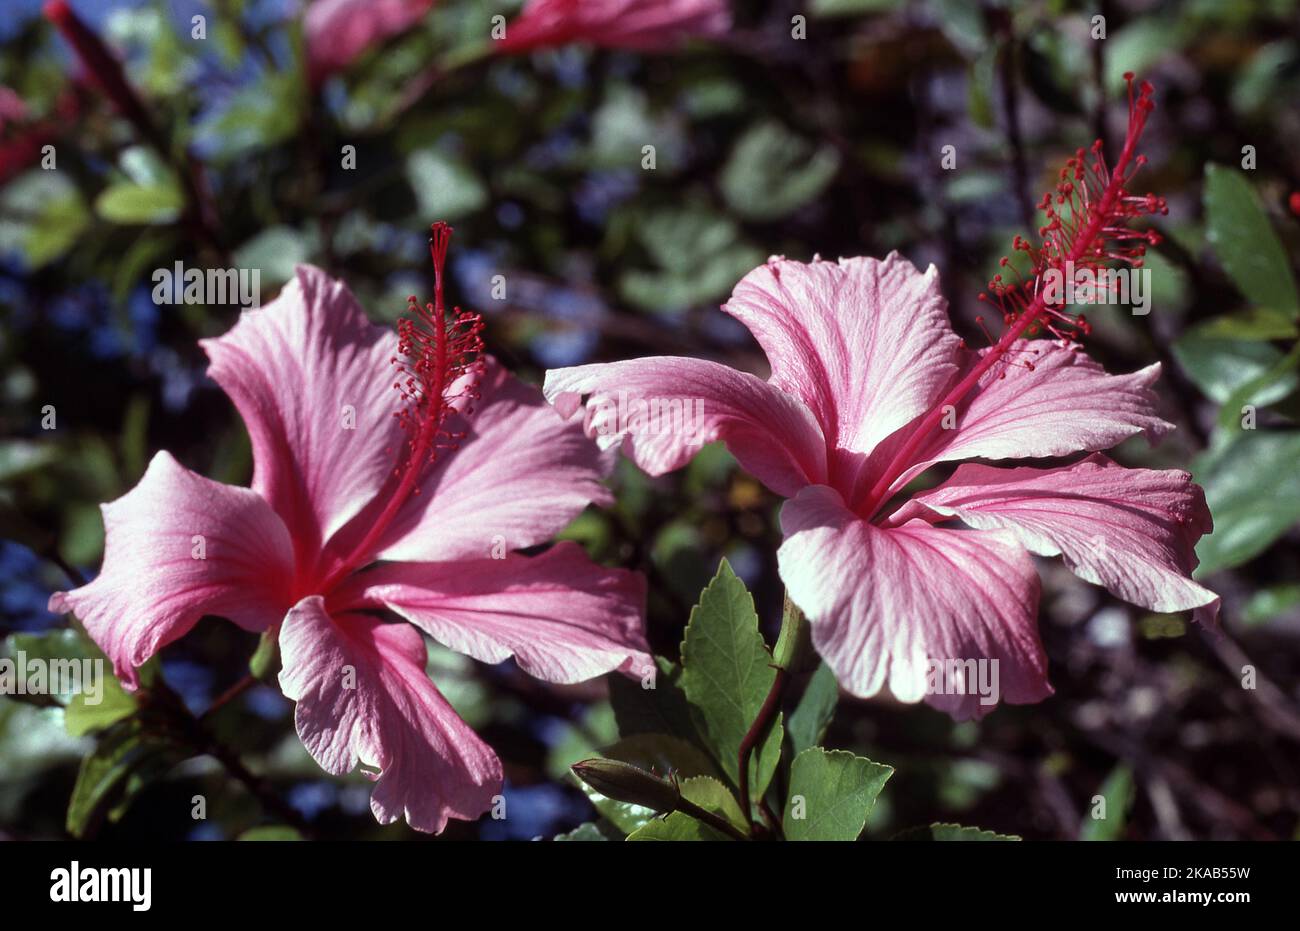 HIBISCUS FLOWERS 'RUTH WILLCOX' Stock Photo